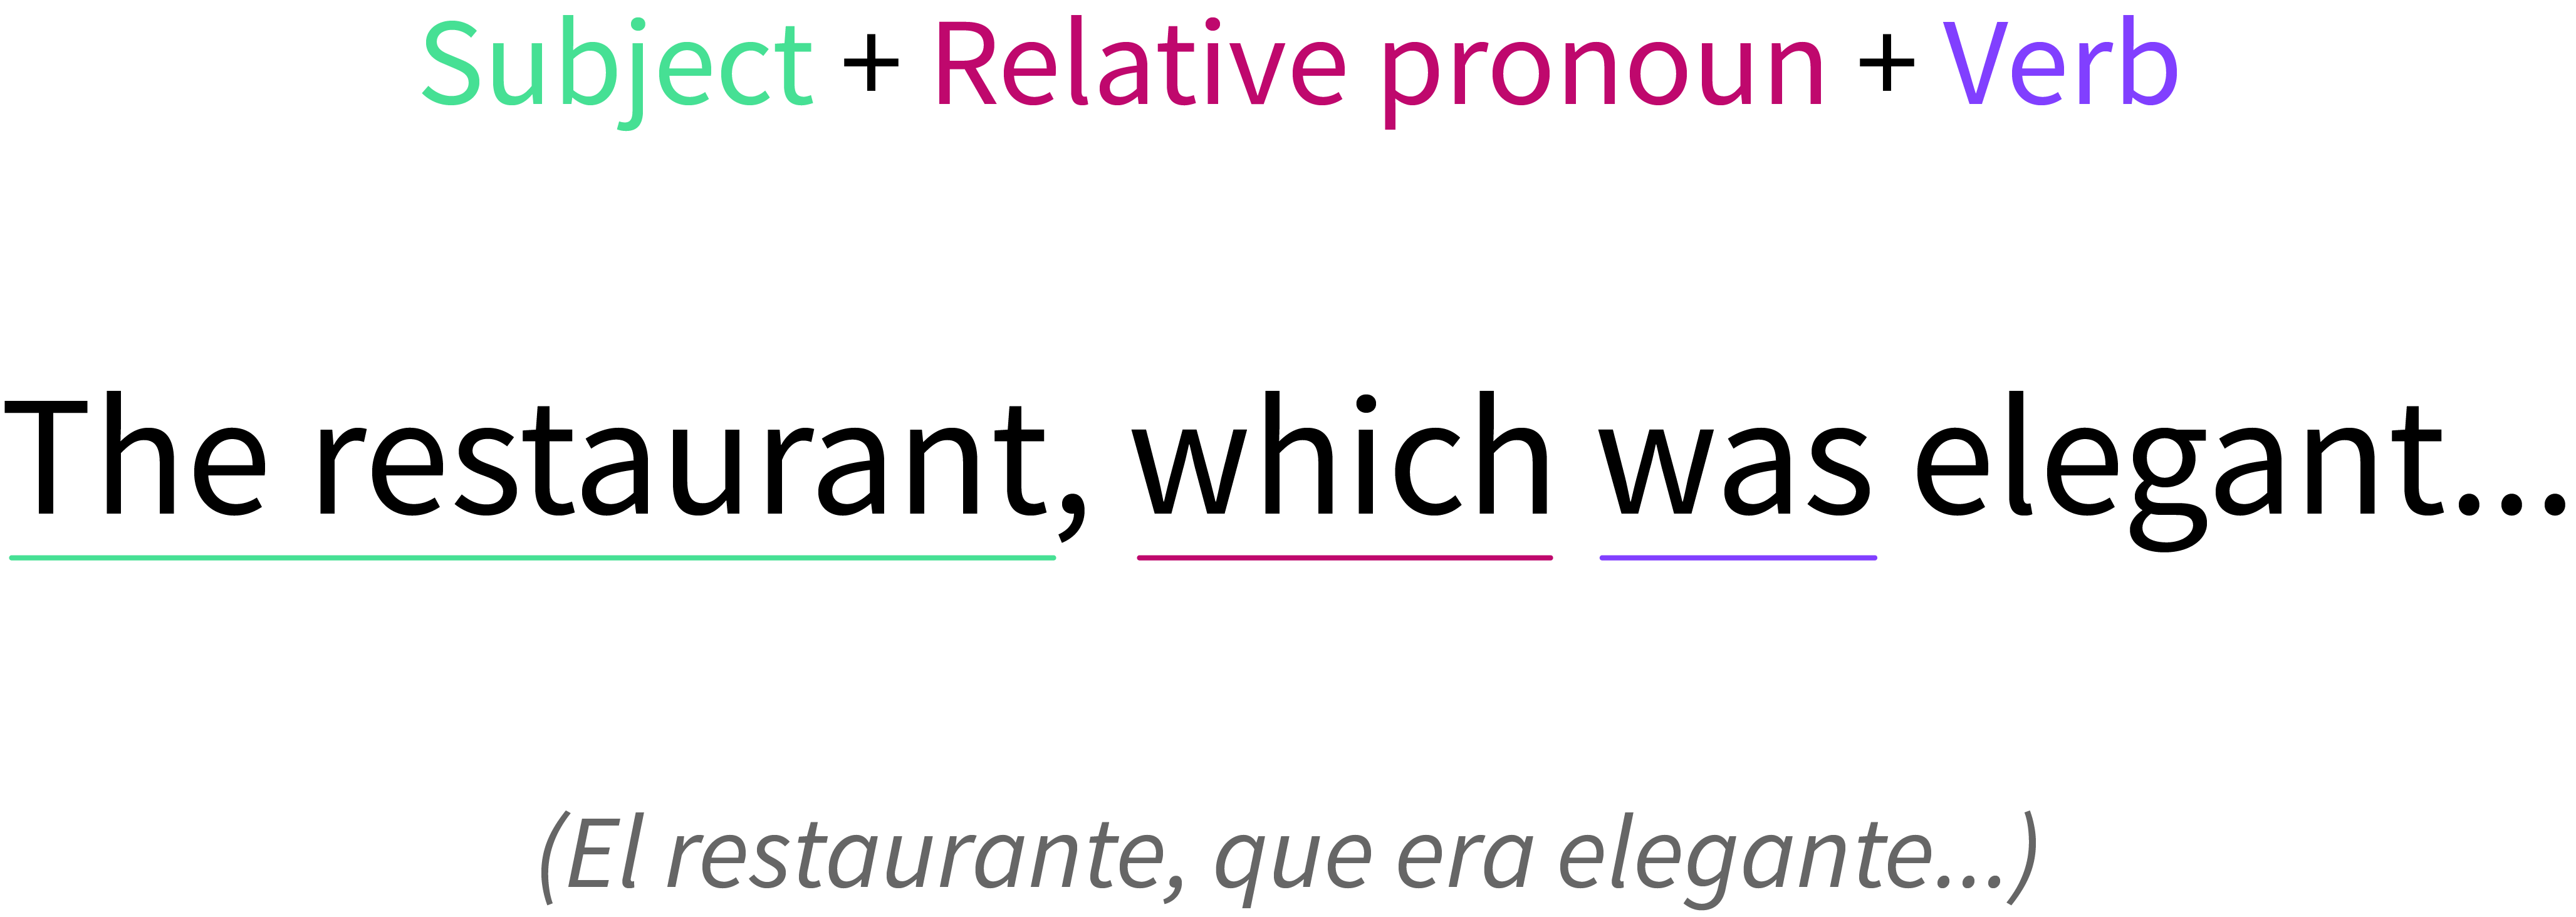 Example of a relative pronoun as a subject.